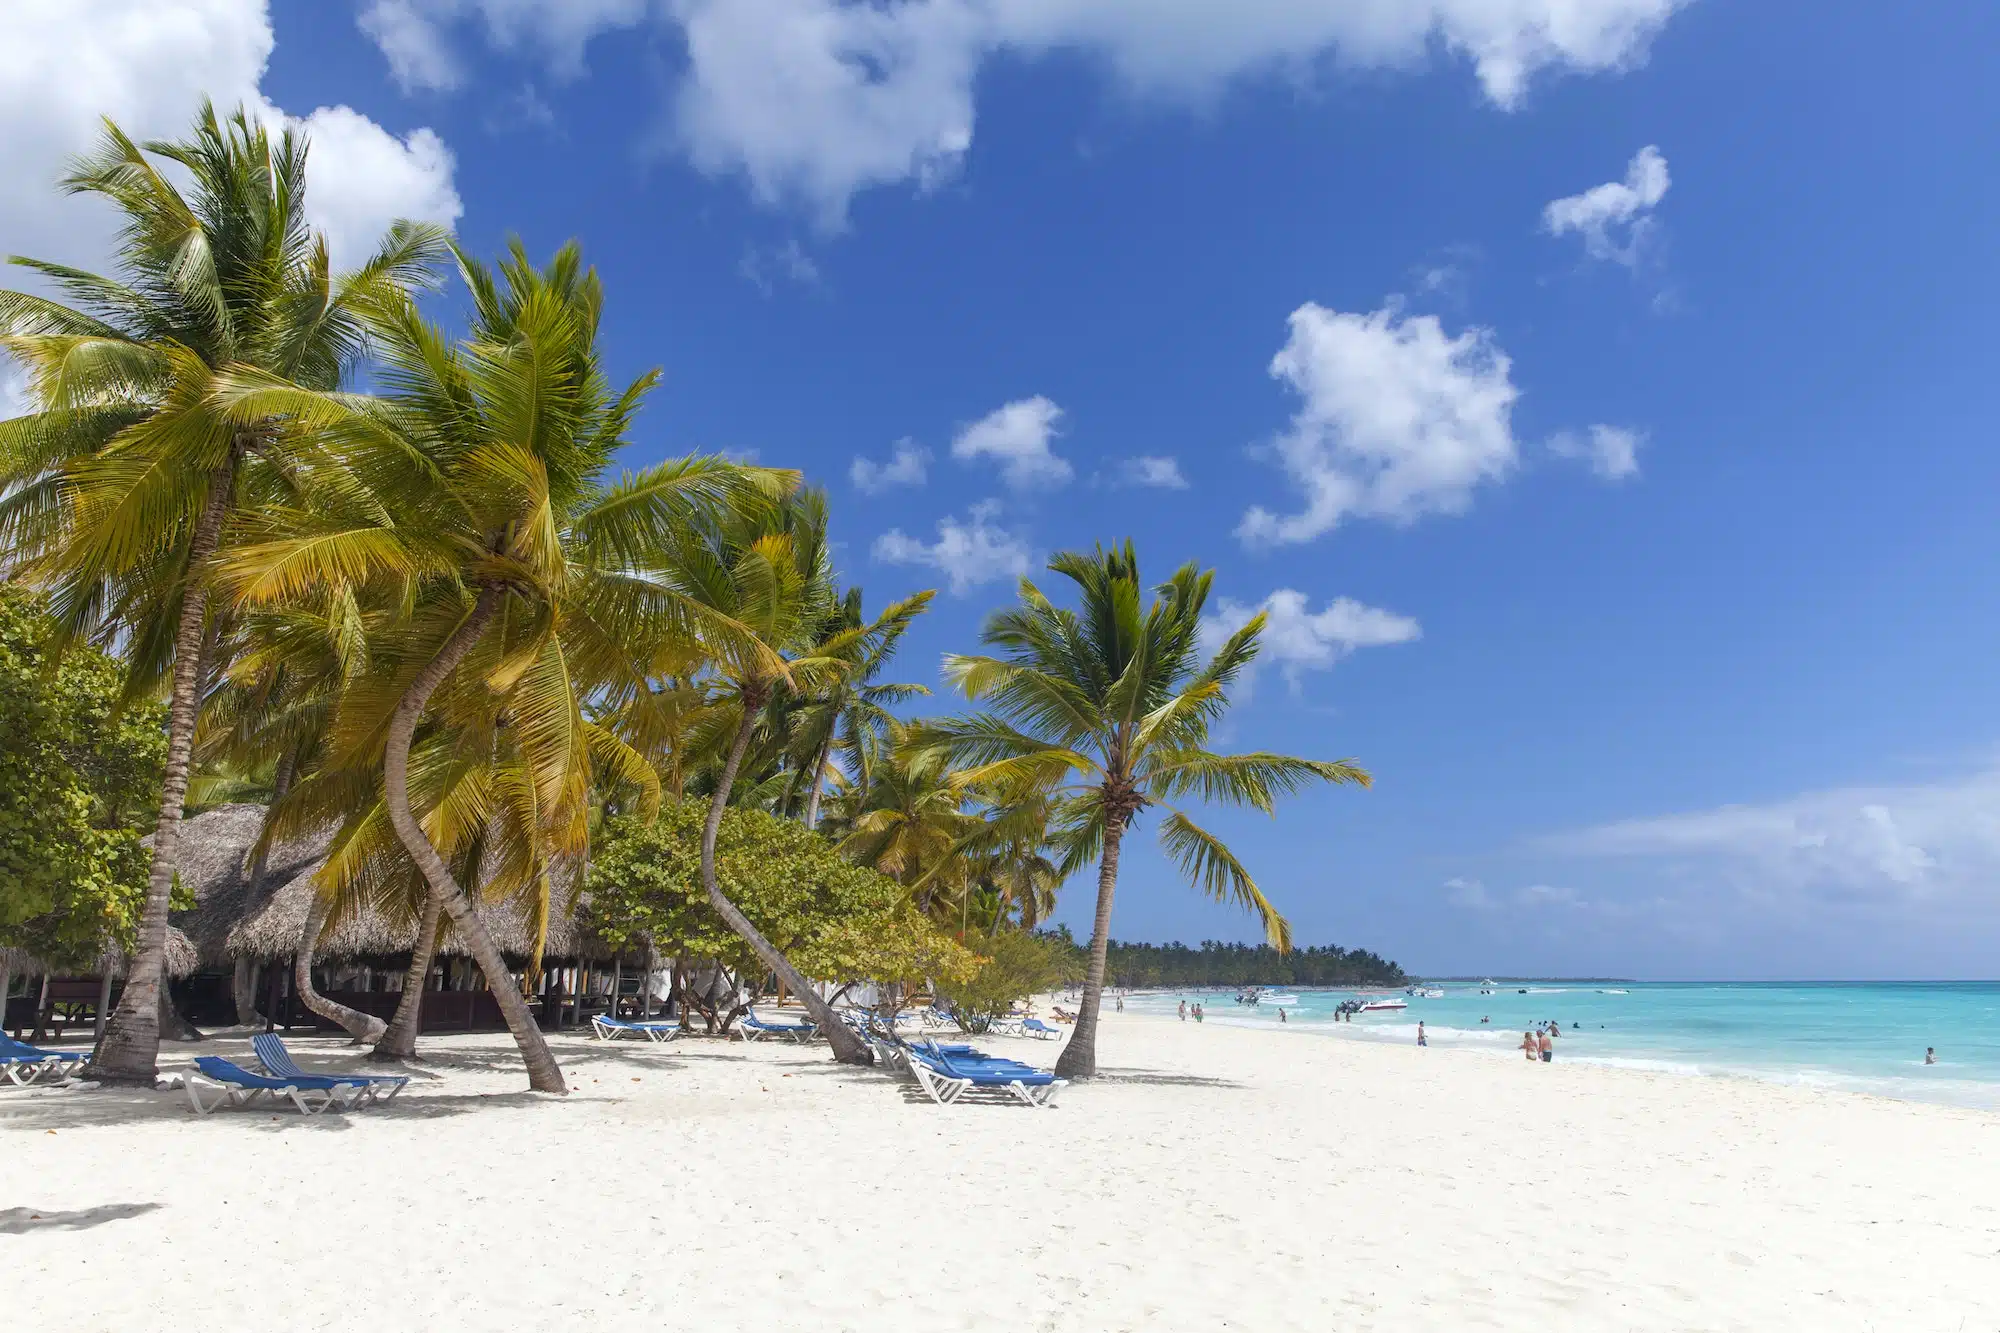 Karibisches Paradies, direkt am Strand mit Palmen. Dominikanische Republik.